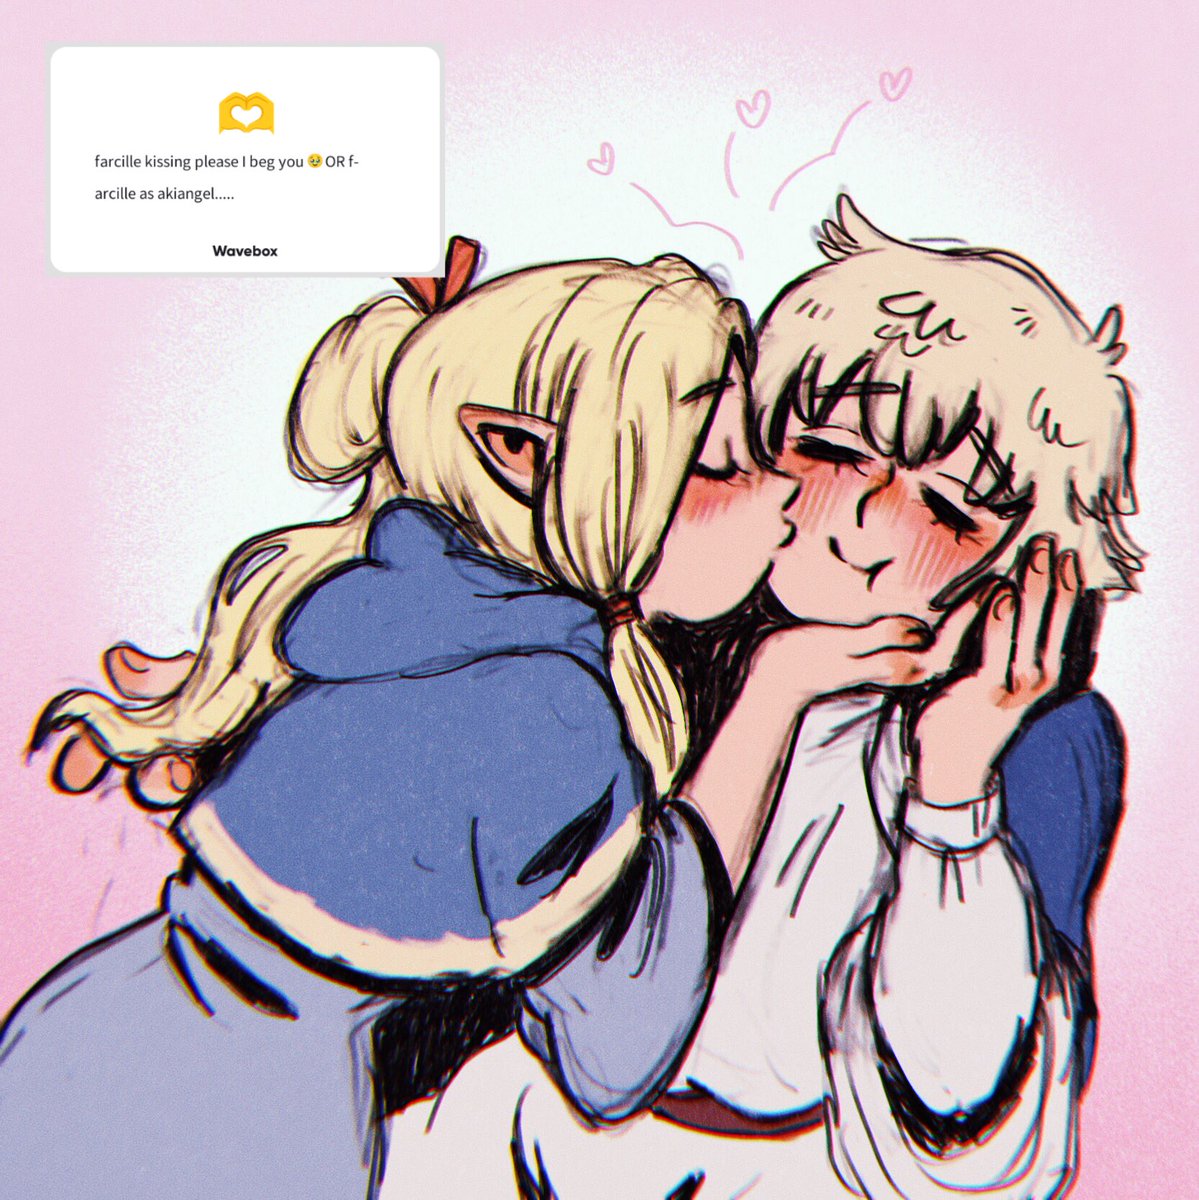 マルシル 「farcille kissing for anon #dungeonmeshi 」|nico ☻のイラスト